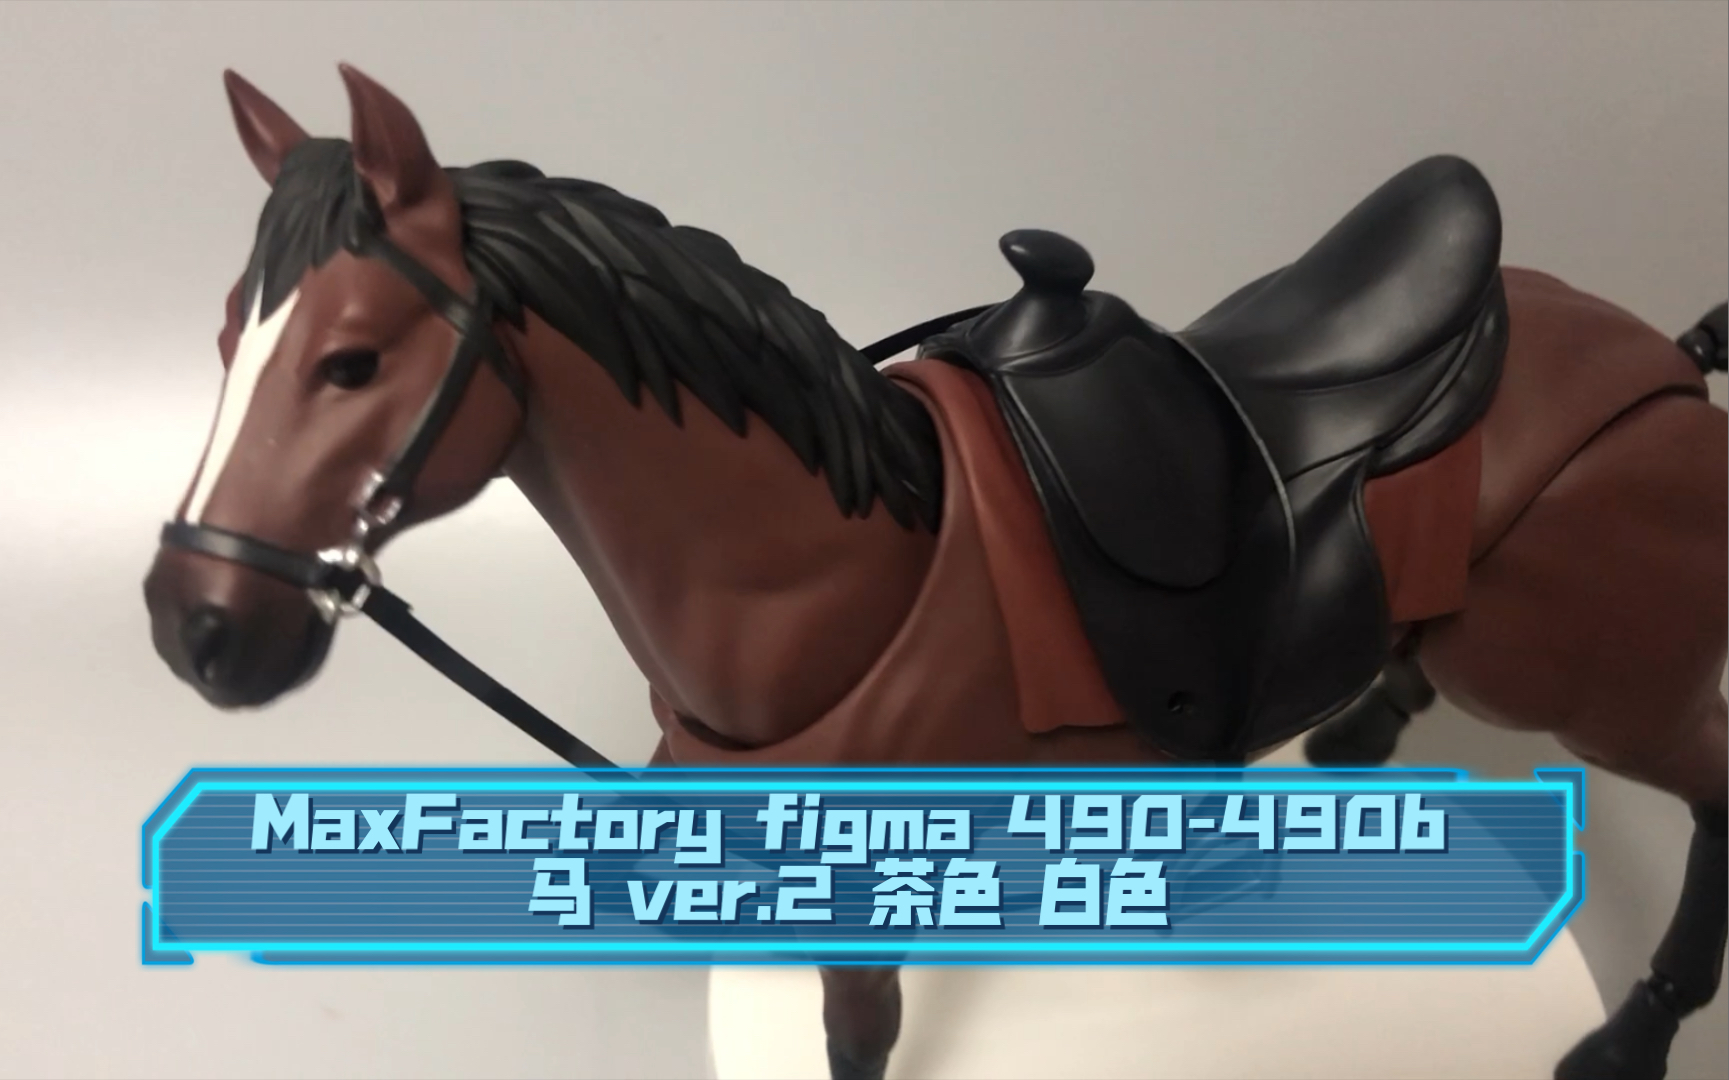 实物拍摄】MaxFactory figma 490-490b 马ver.2 茶色-哔哩哔哩